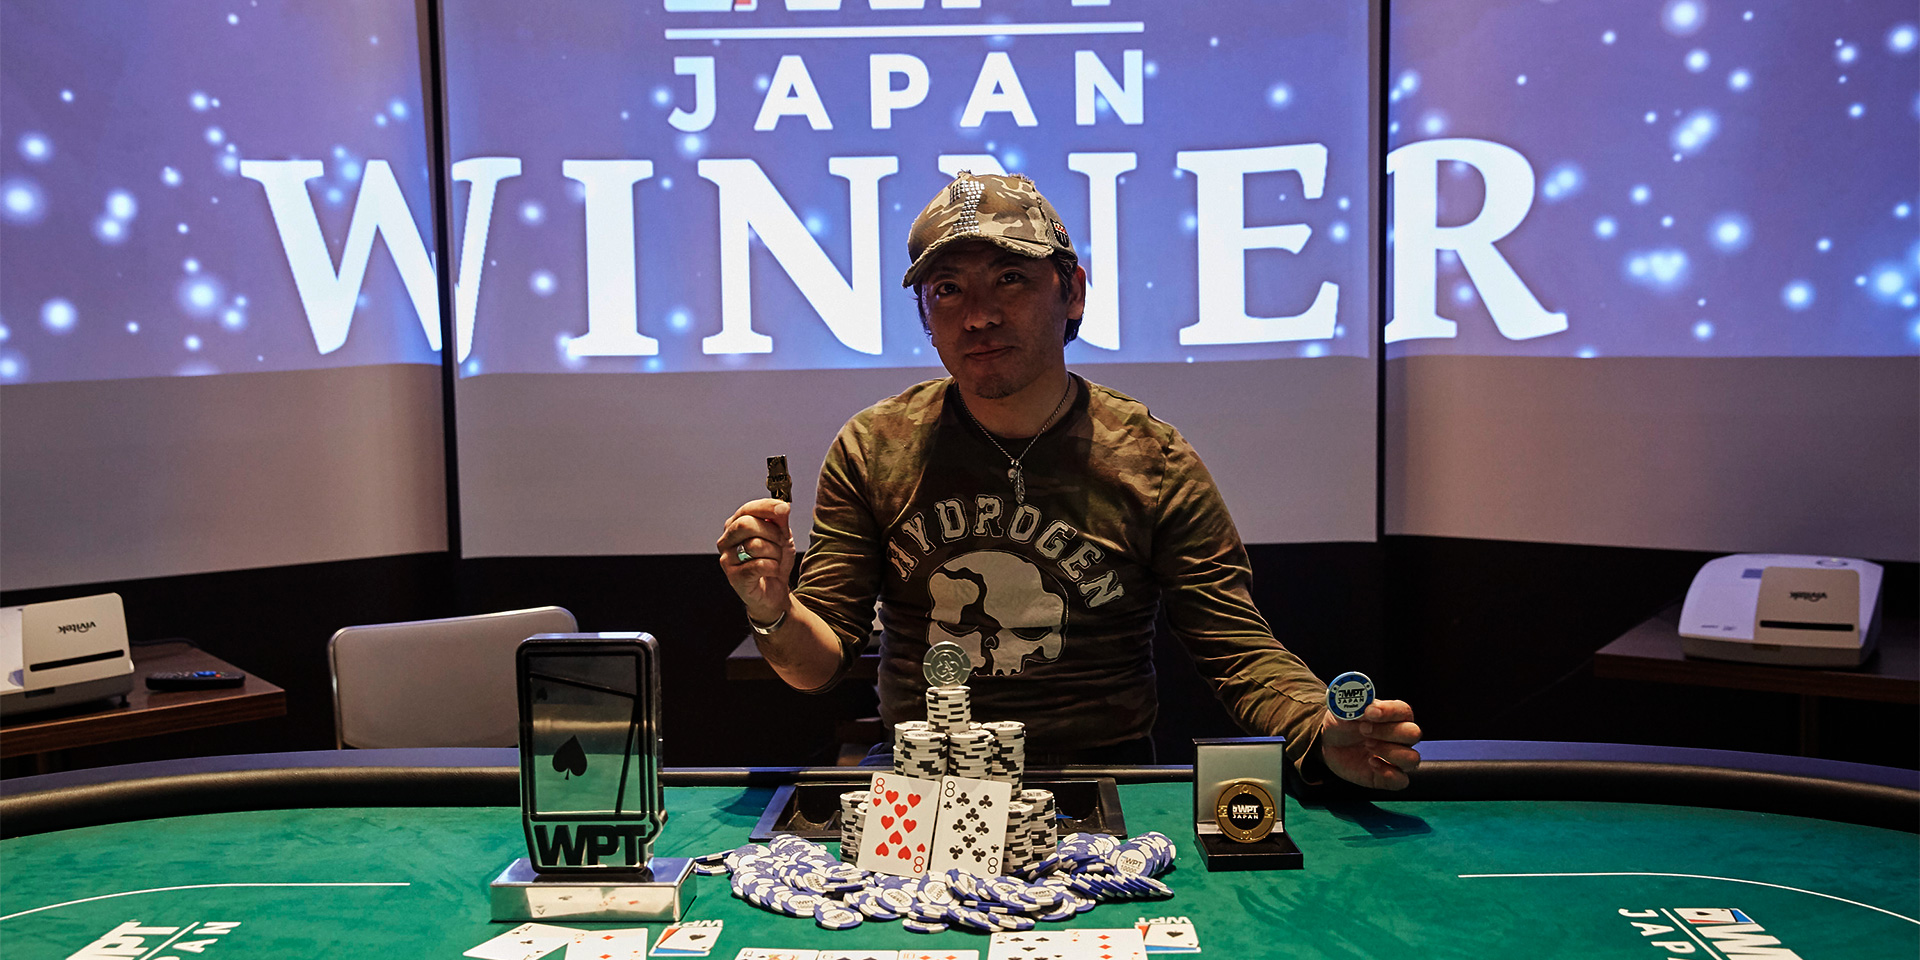 Japan poker winner